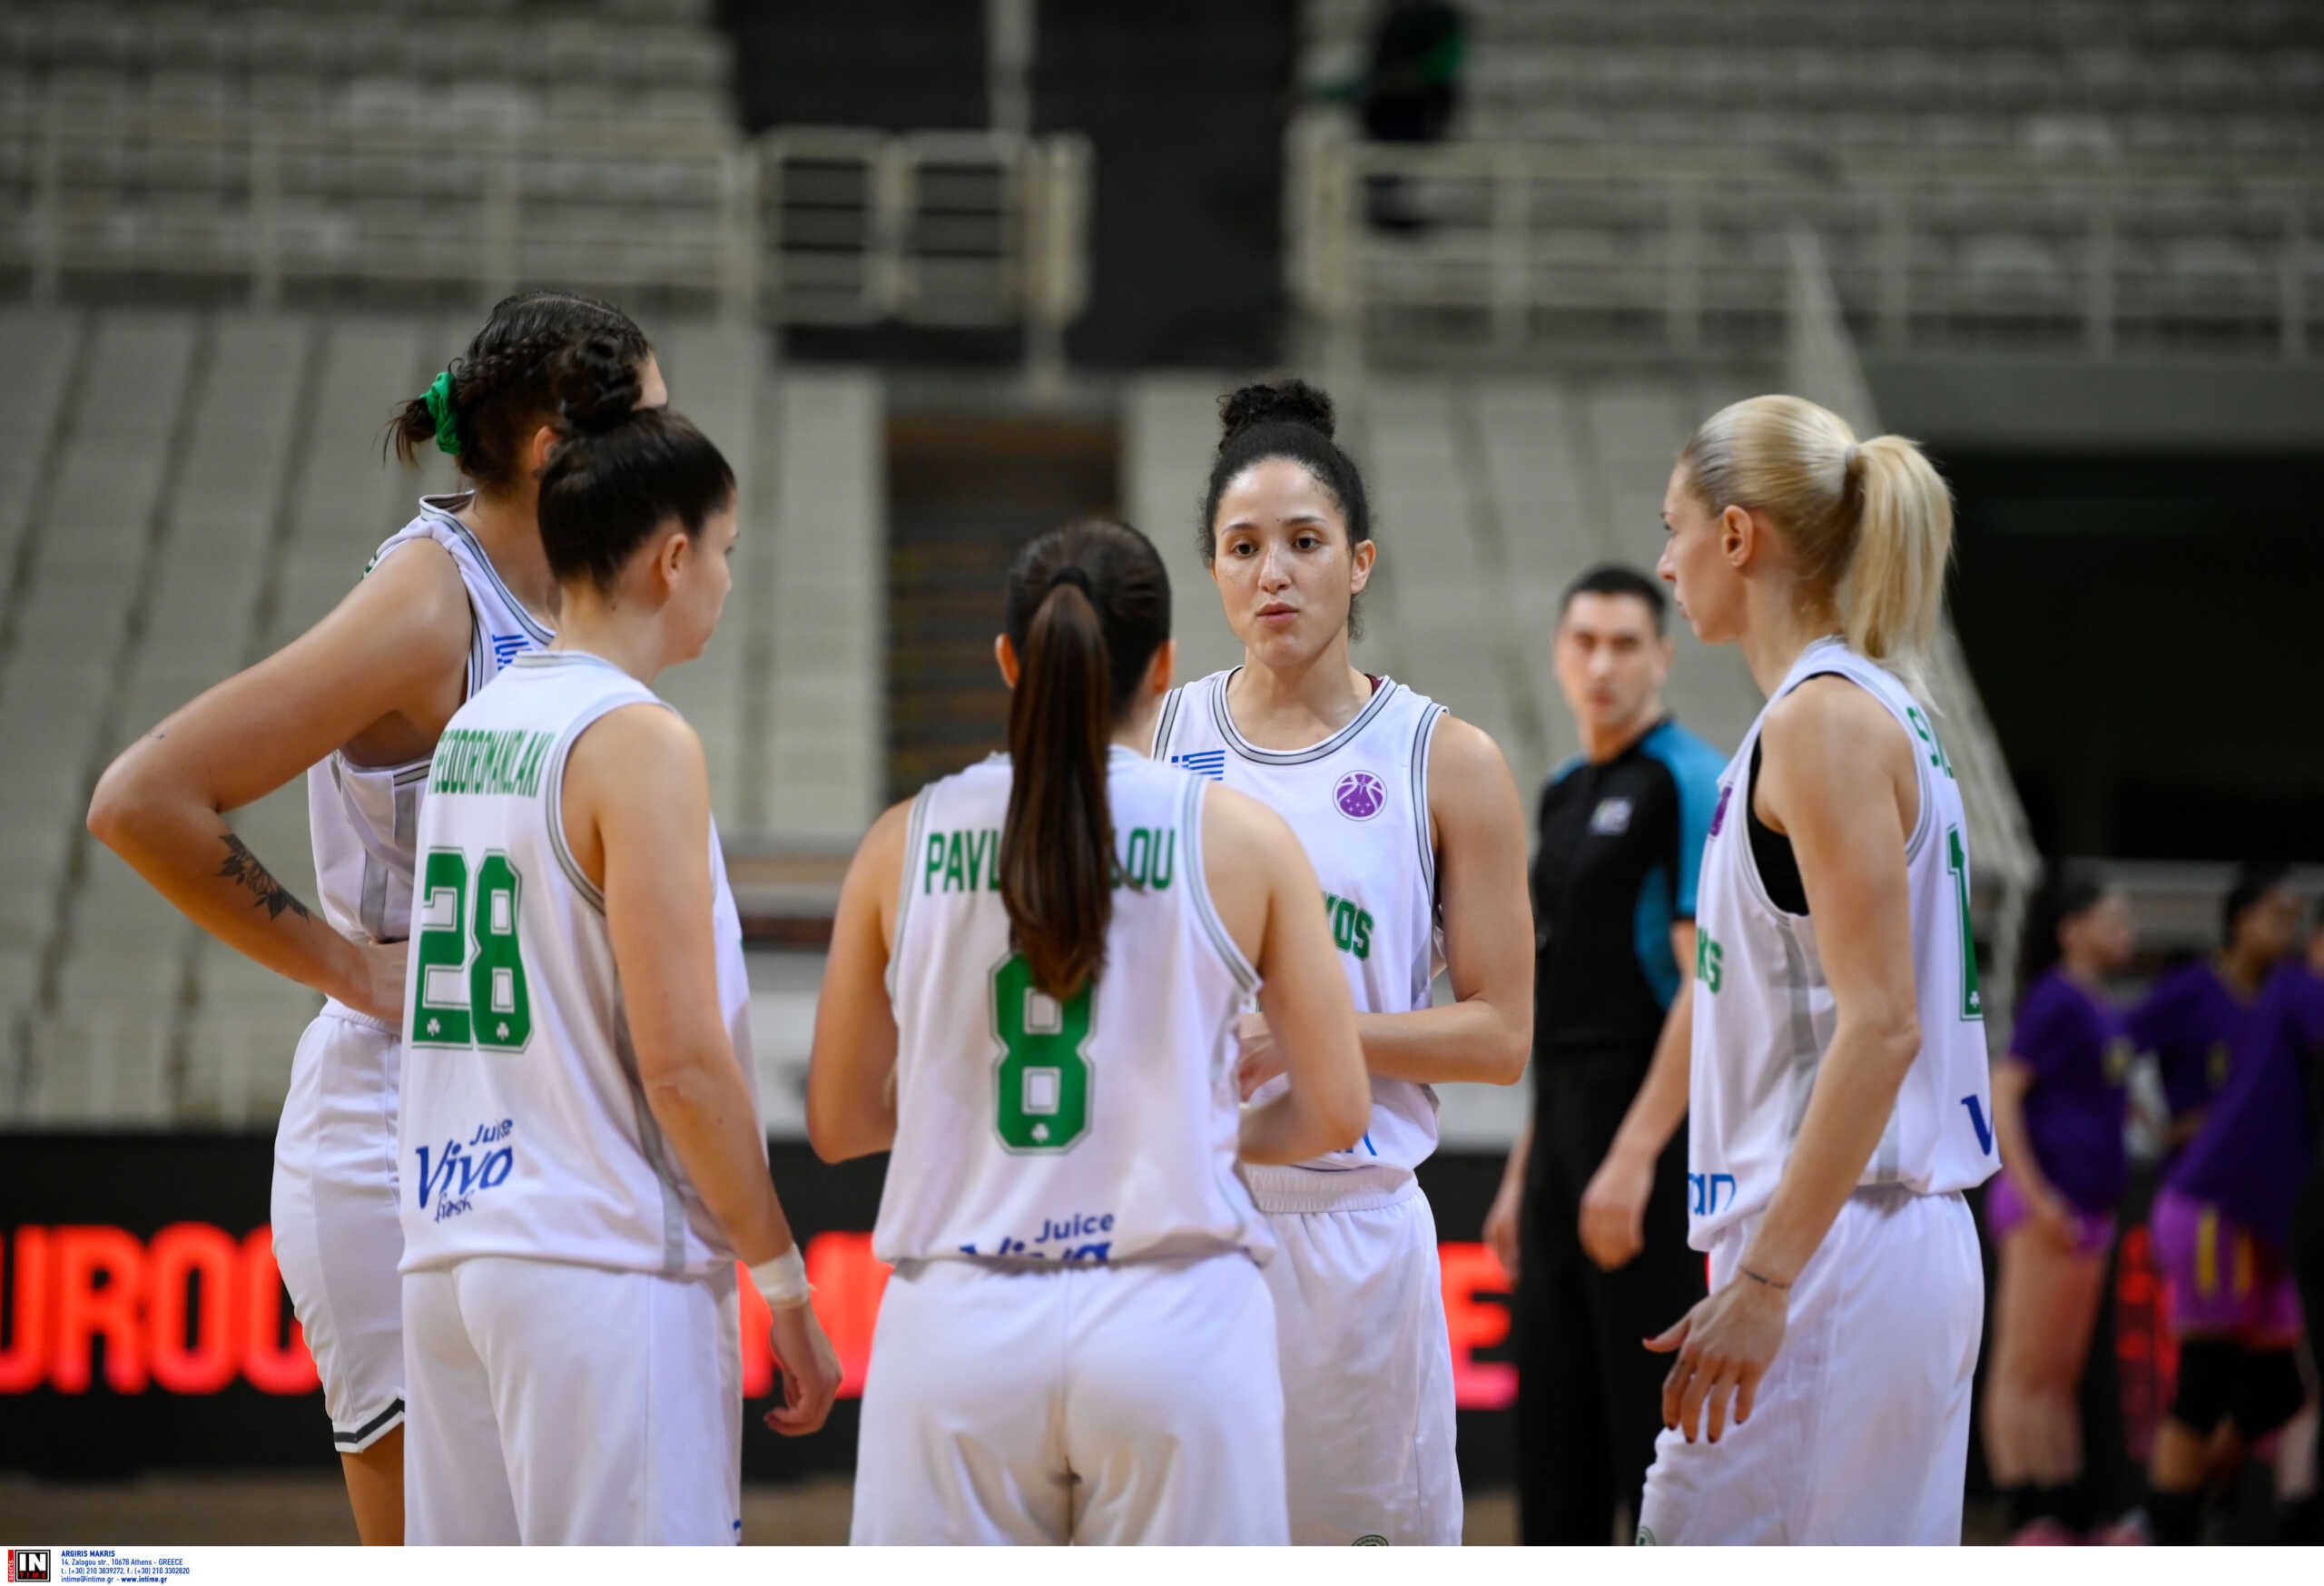 Αποκλειστικά στον ΟΠΑΠ: Η προπονήτρια και οι αθλήτριες του Παναθηναϊκού μιλούν για το ντέρμπι αιωνίων στο γυναικείο μπάσκετ